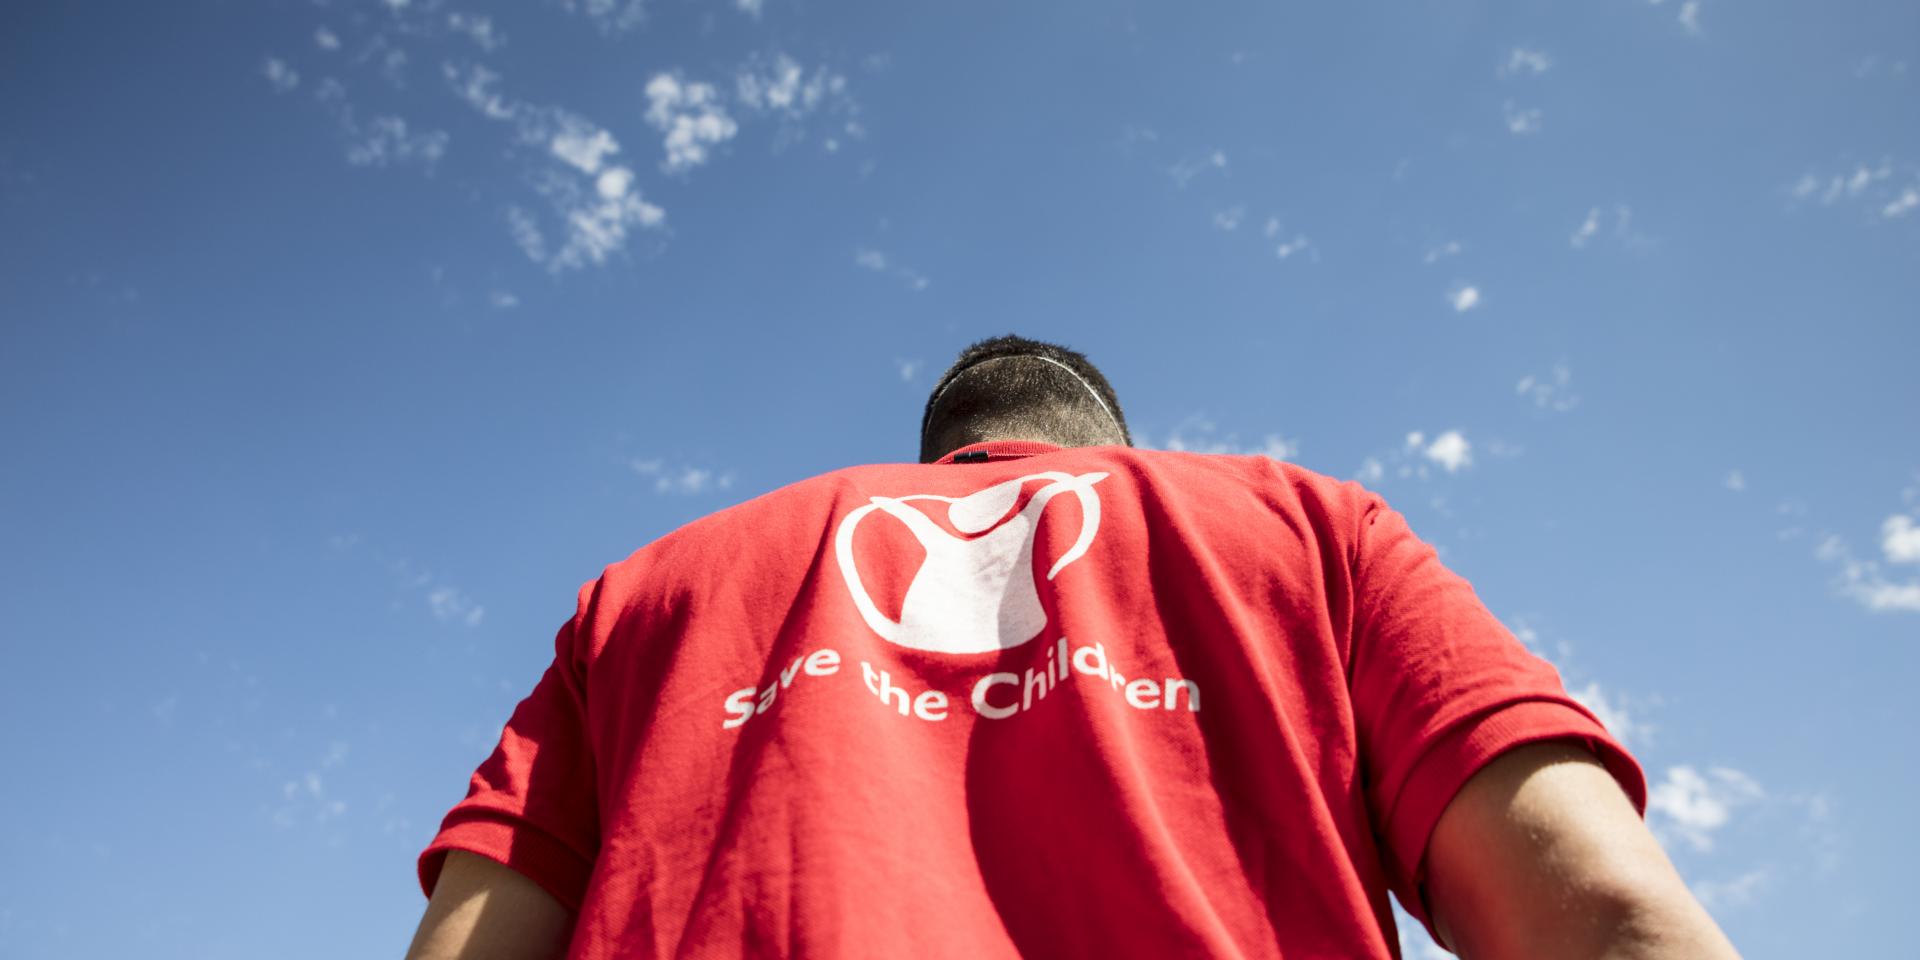 Un operatore indossa una maglietta rossa con il logo di Save the Children, che mette al centro la figura stilizzata di un bambino